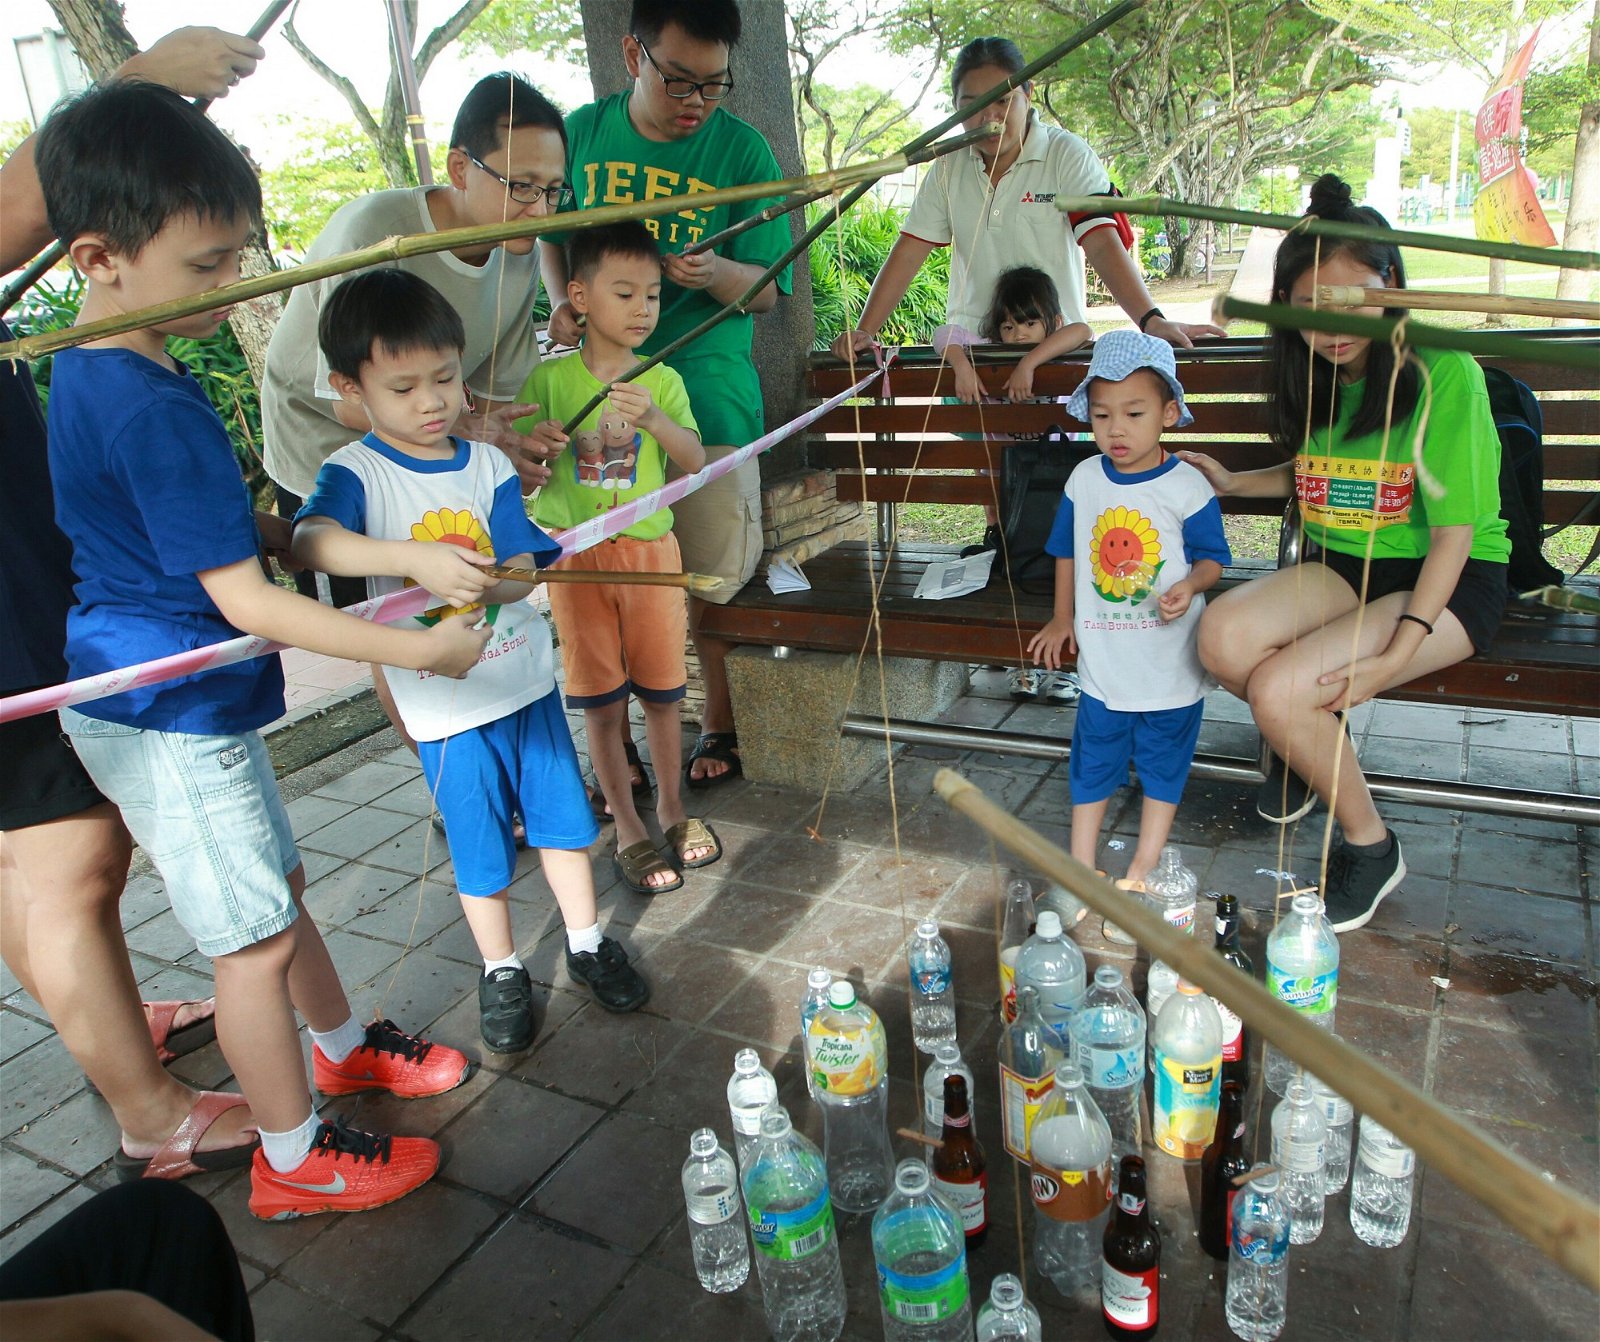 “钓玻璃樽”游戏吸引大批父母及小孩捧场，小孩全神贯注地将“钓竿”中的木块慢慢放入玻璃樽里，再用木块支撑瓶口，一把将水瓶拉起。